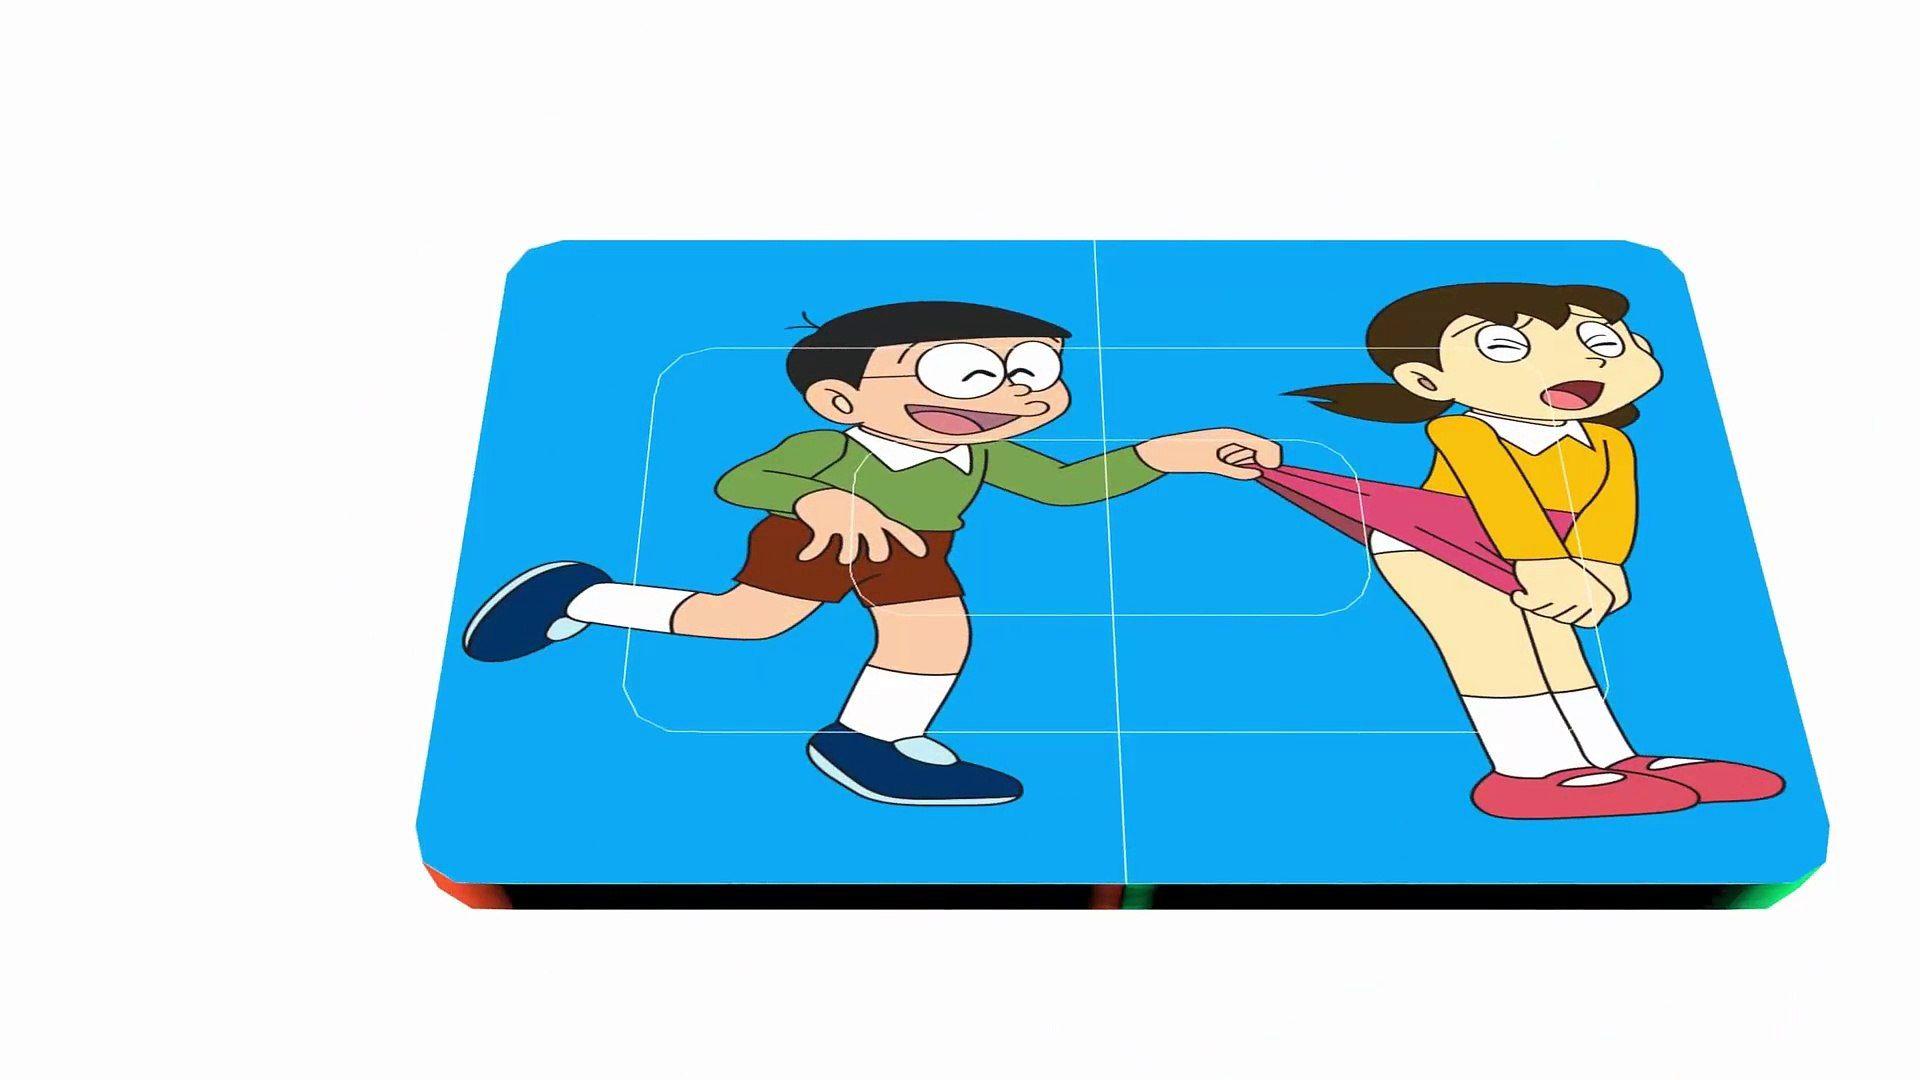 Anime Doraemon HD Wallpaper by Cheeke/チーケ/치케